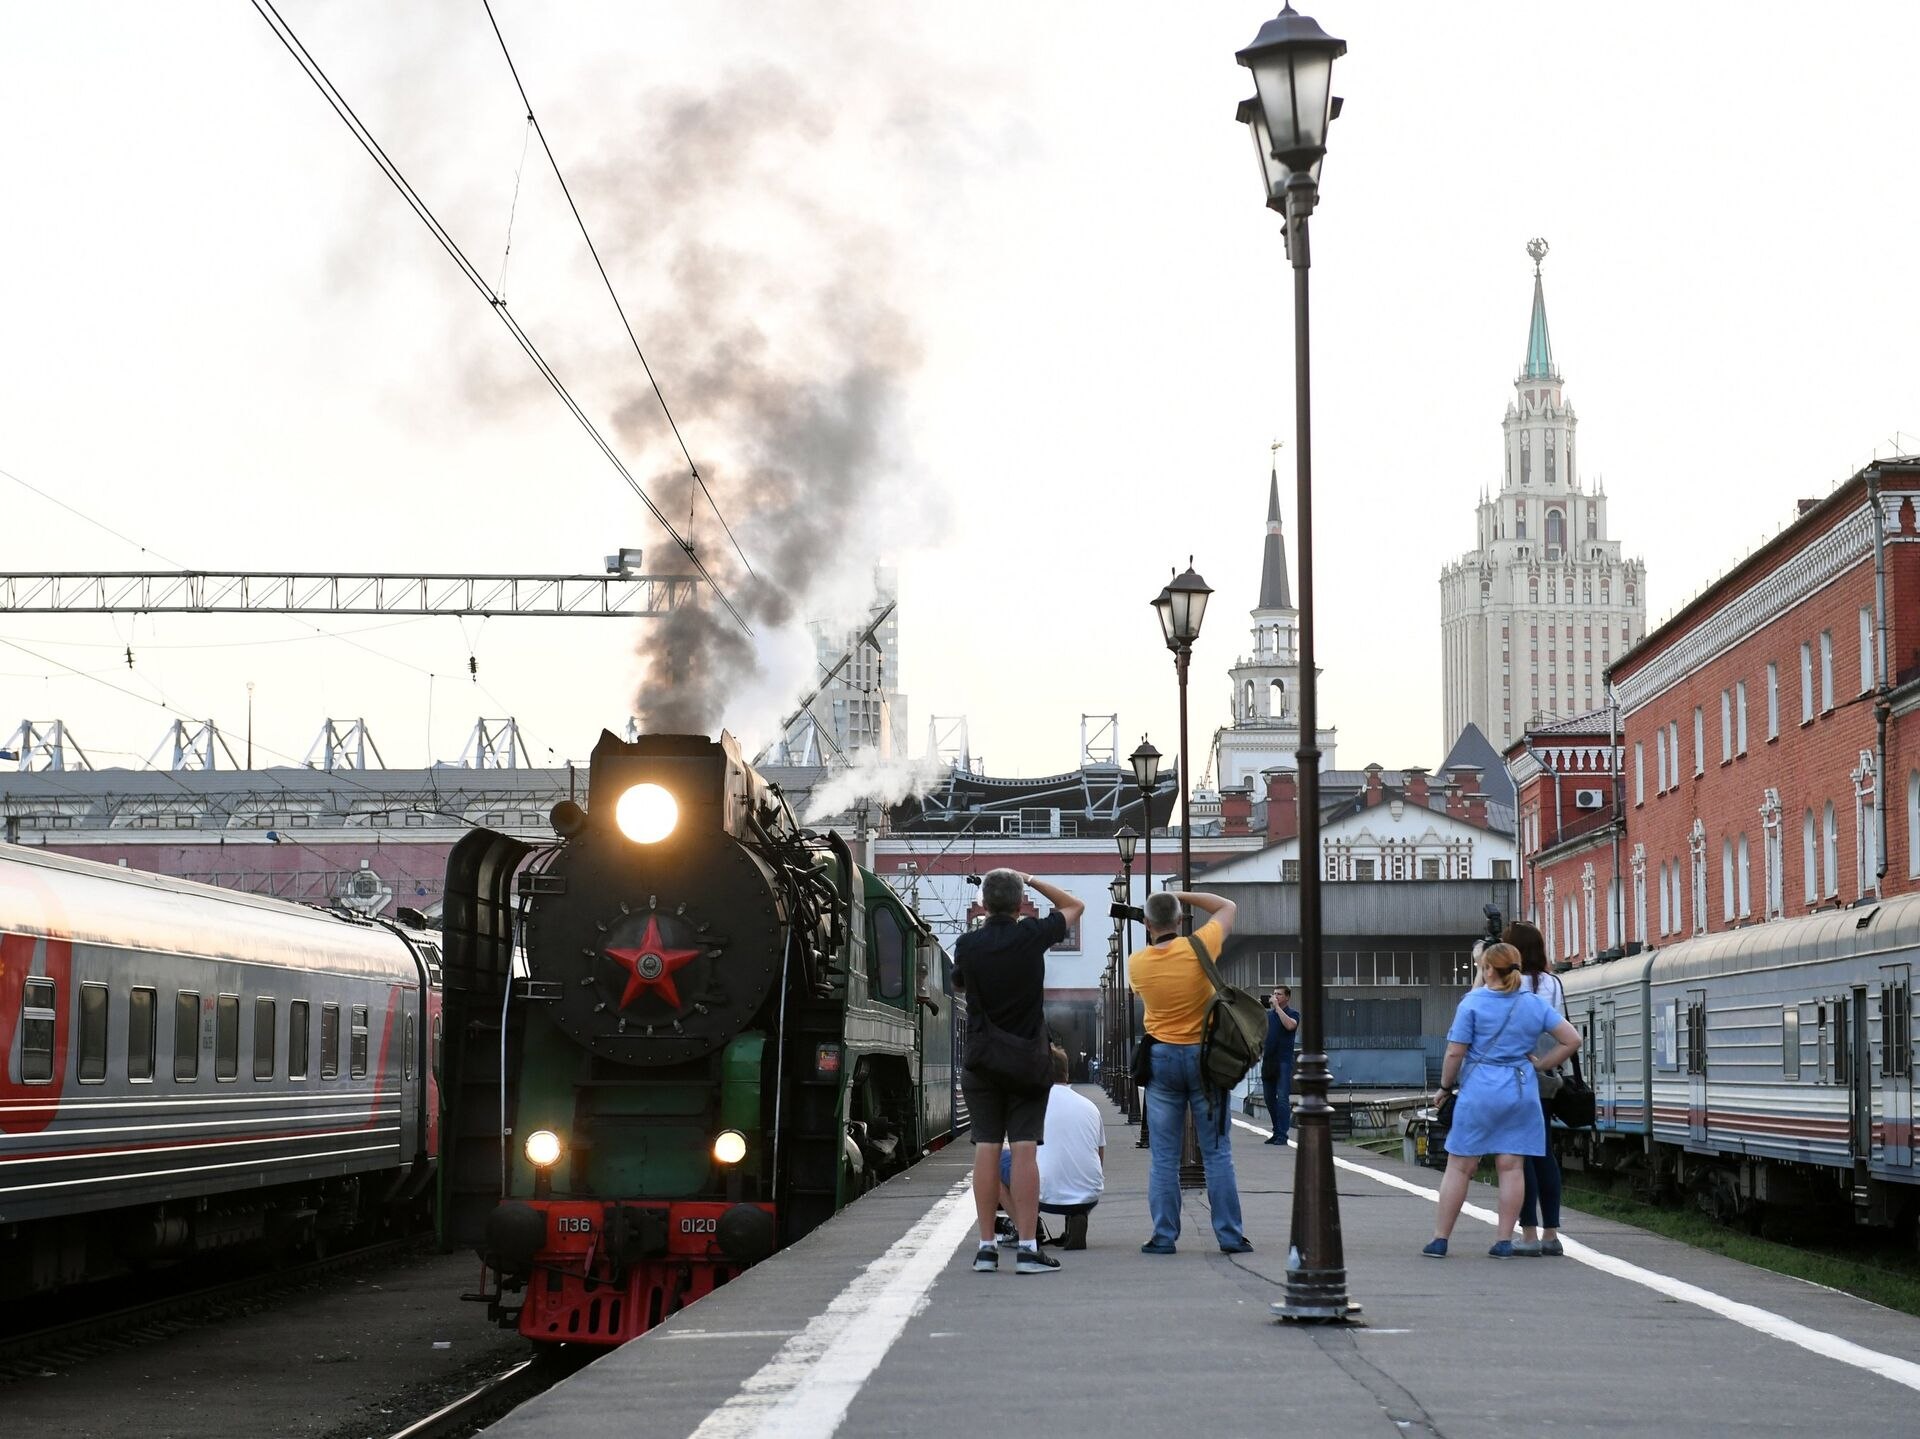 перрон казанский вокзал